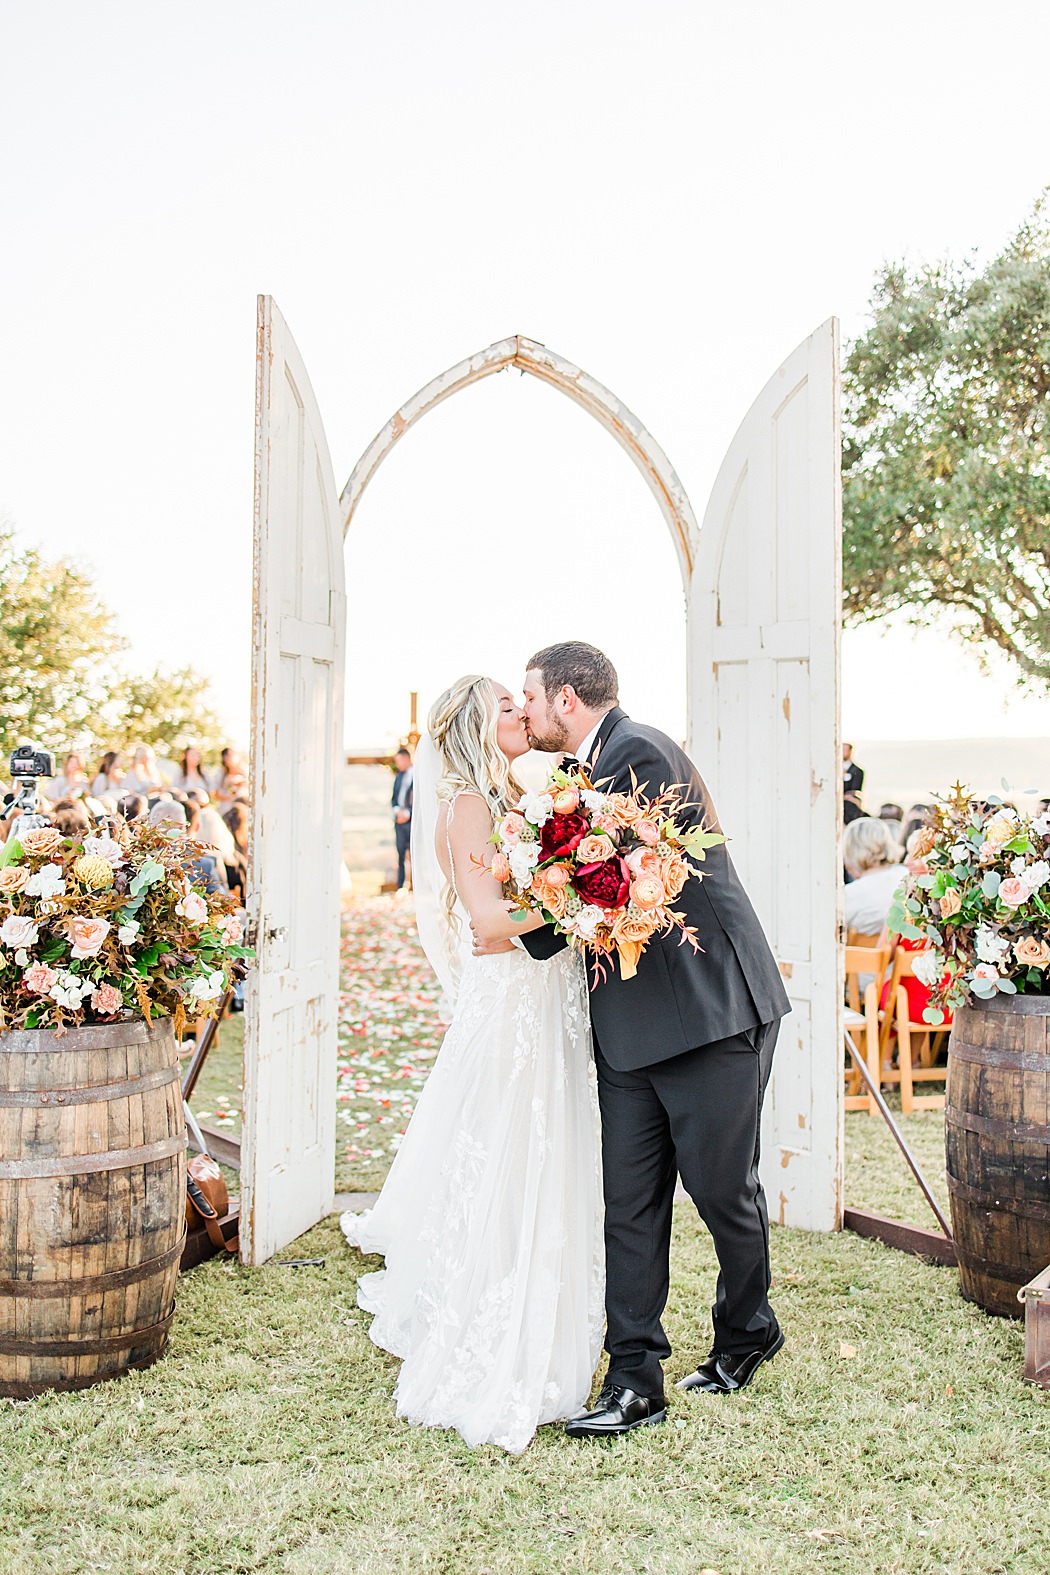 A Grey and Peach Fall Wedding at Contigo Ranch in Fredericksburg Texas by Allison Jeffers Photography 0004